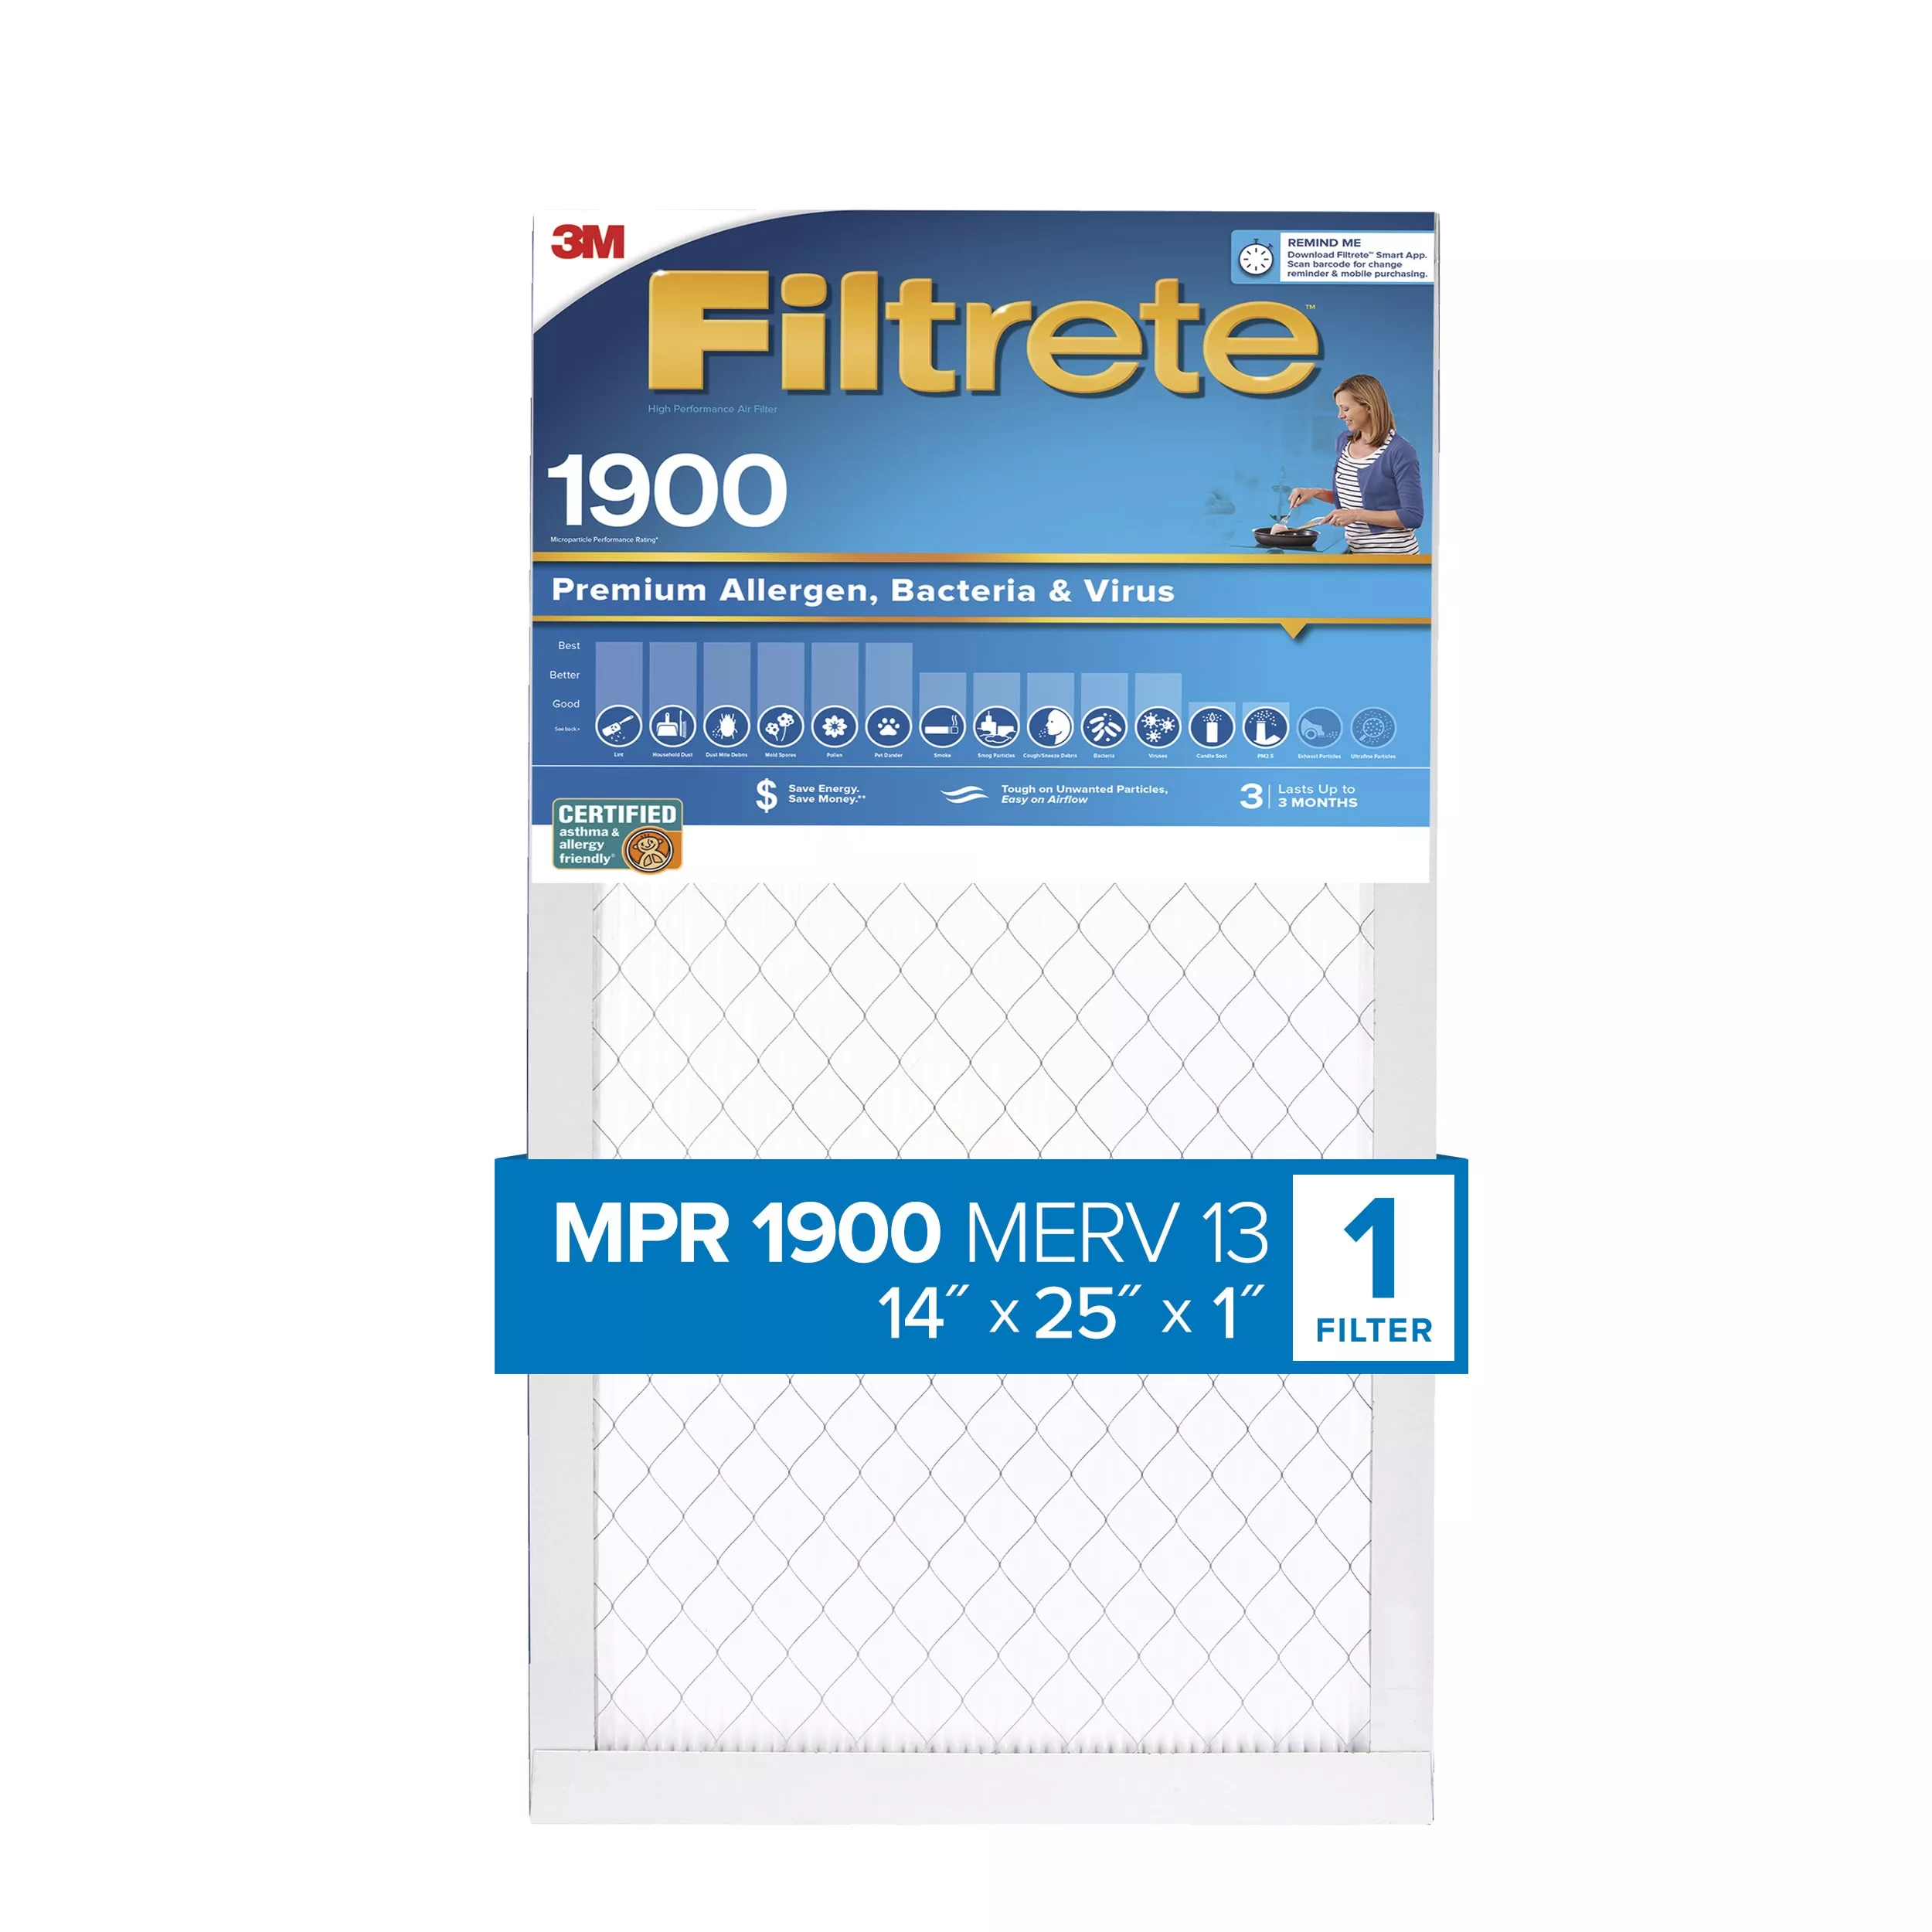 Filtrete™ High Performance Air Filter 1900 MPR UA04-4, 14 in x 25 in x 1 in (35.5 cm x 63.5 cm x 2.5 cm)